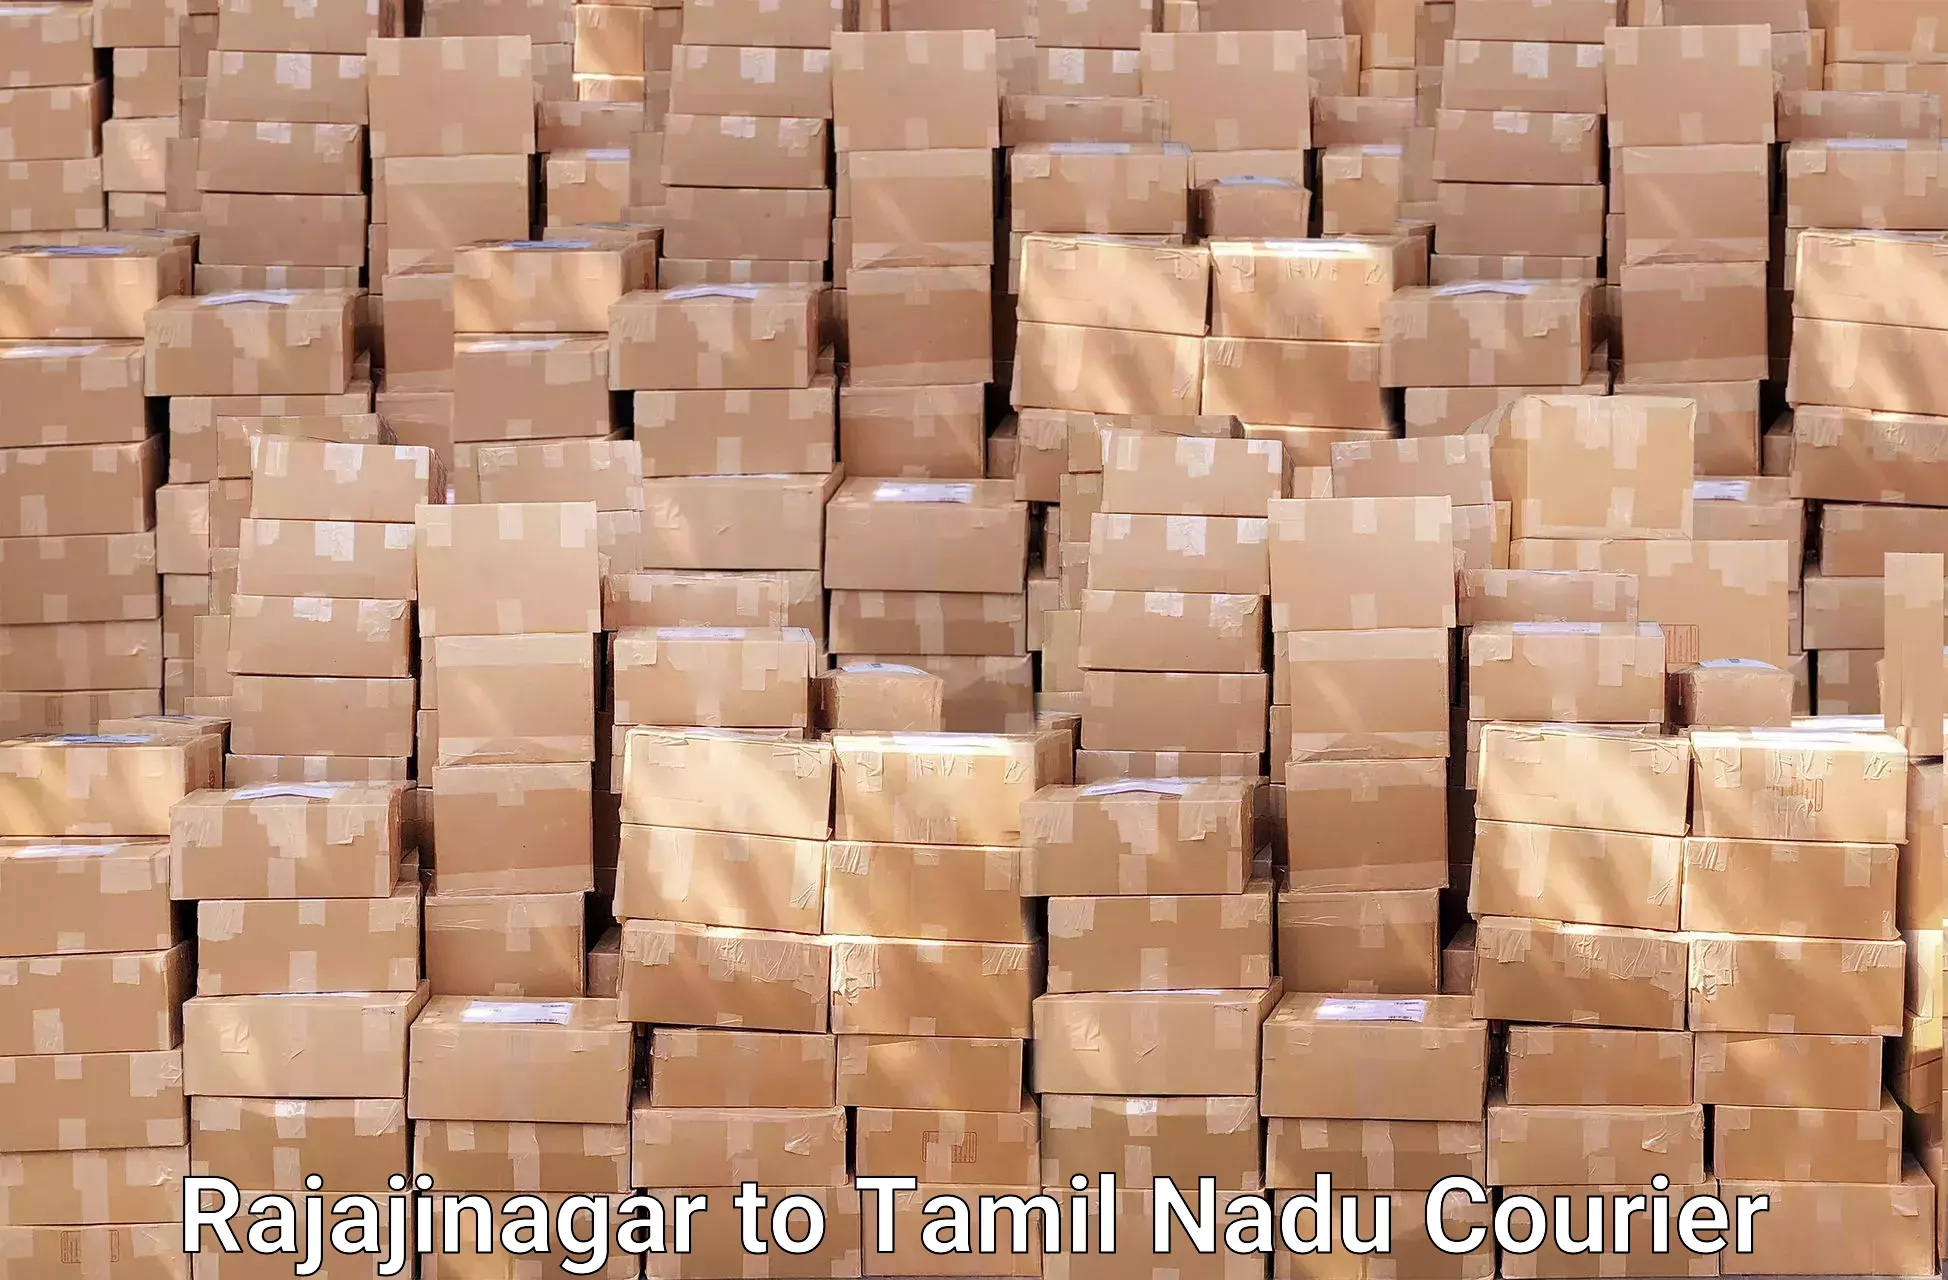 Moving and storage services Rajajinagar to Tallakulam